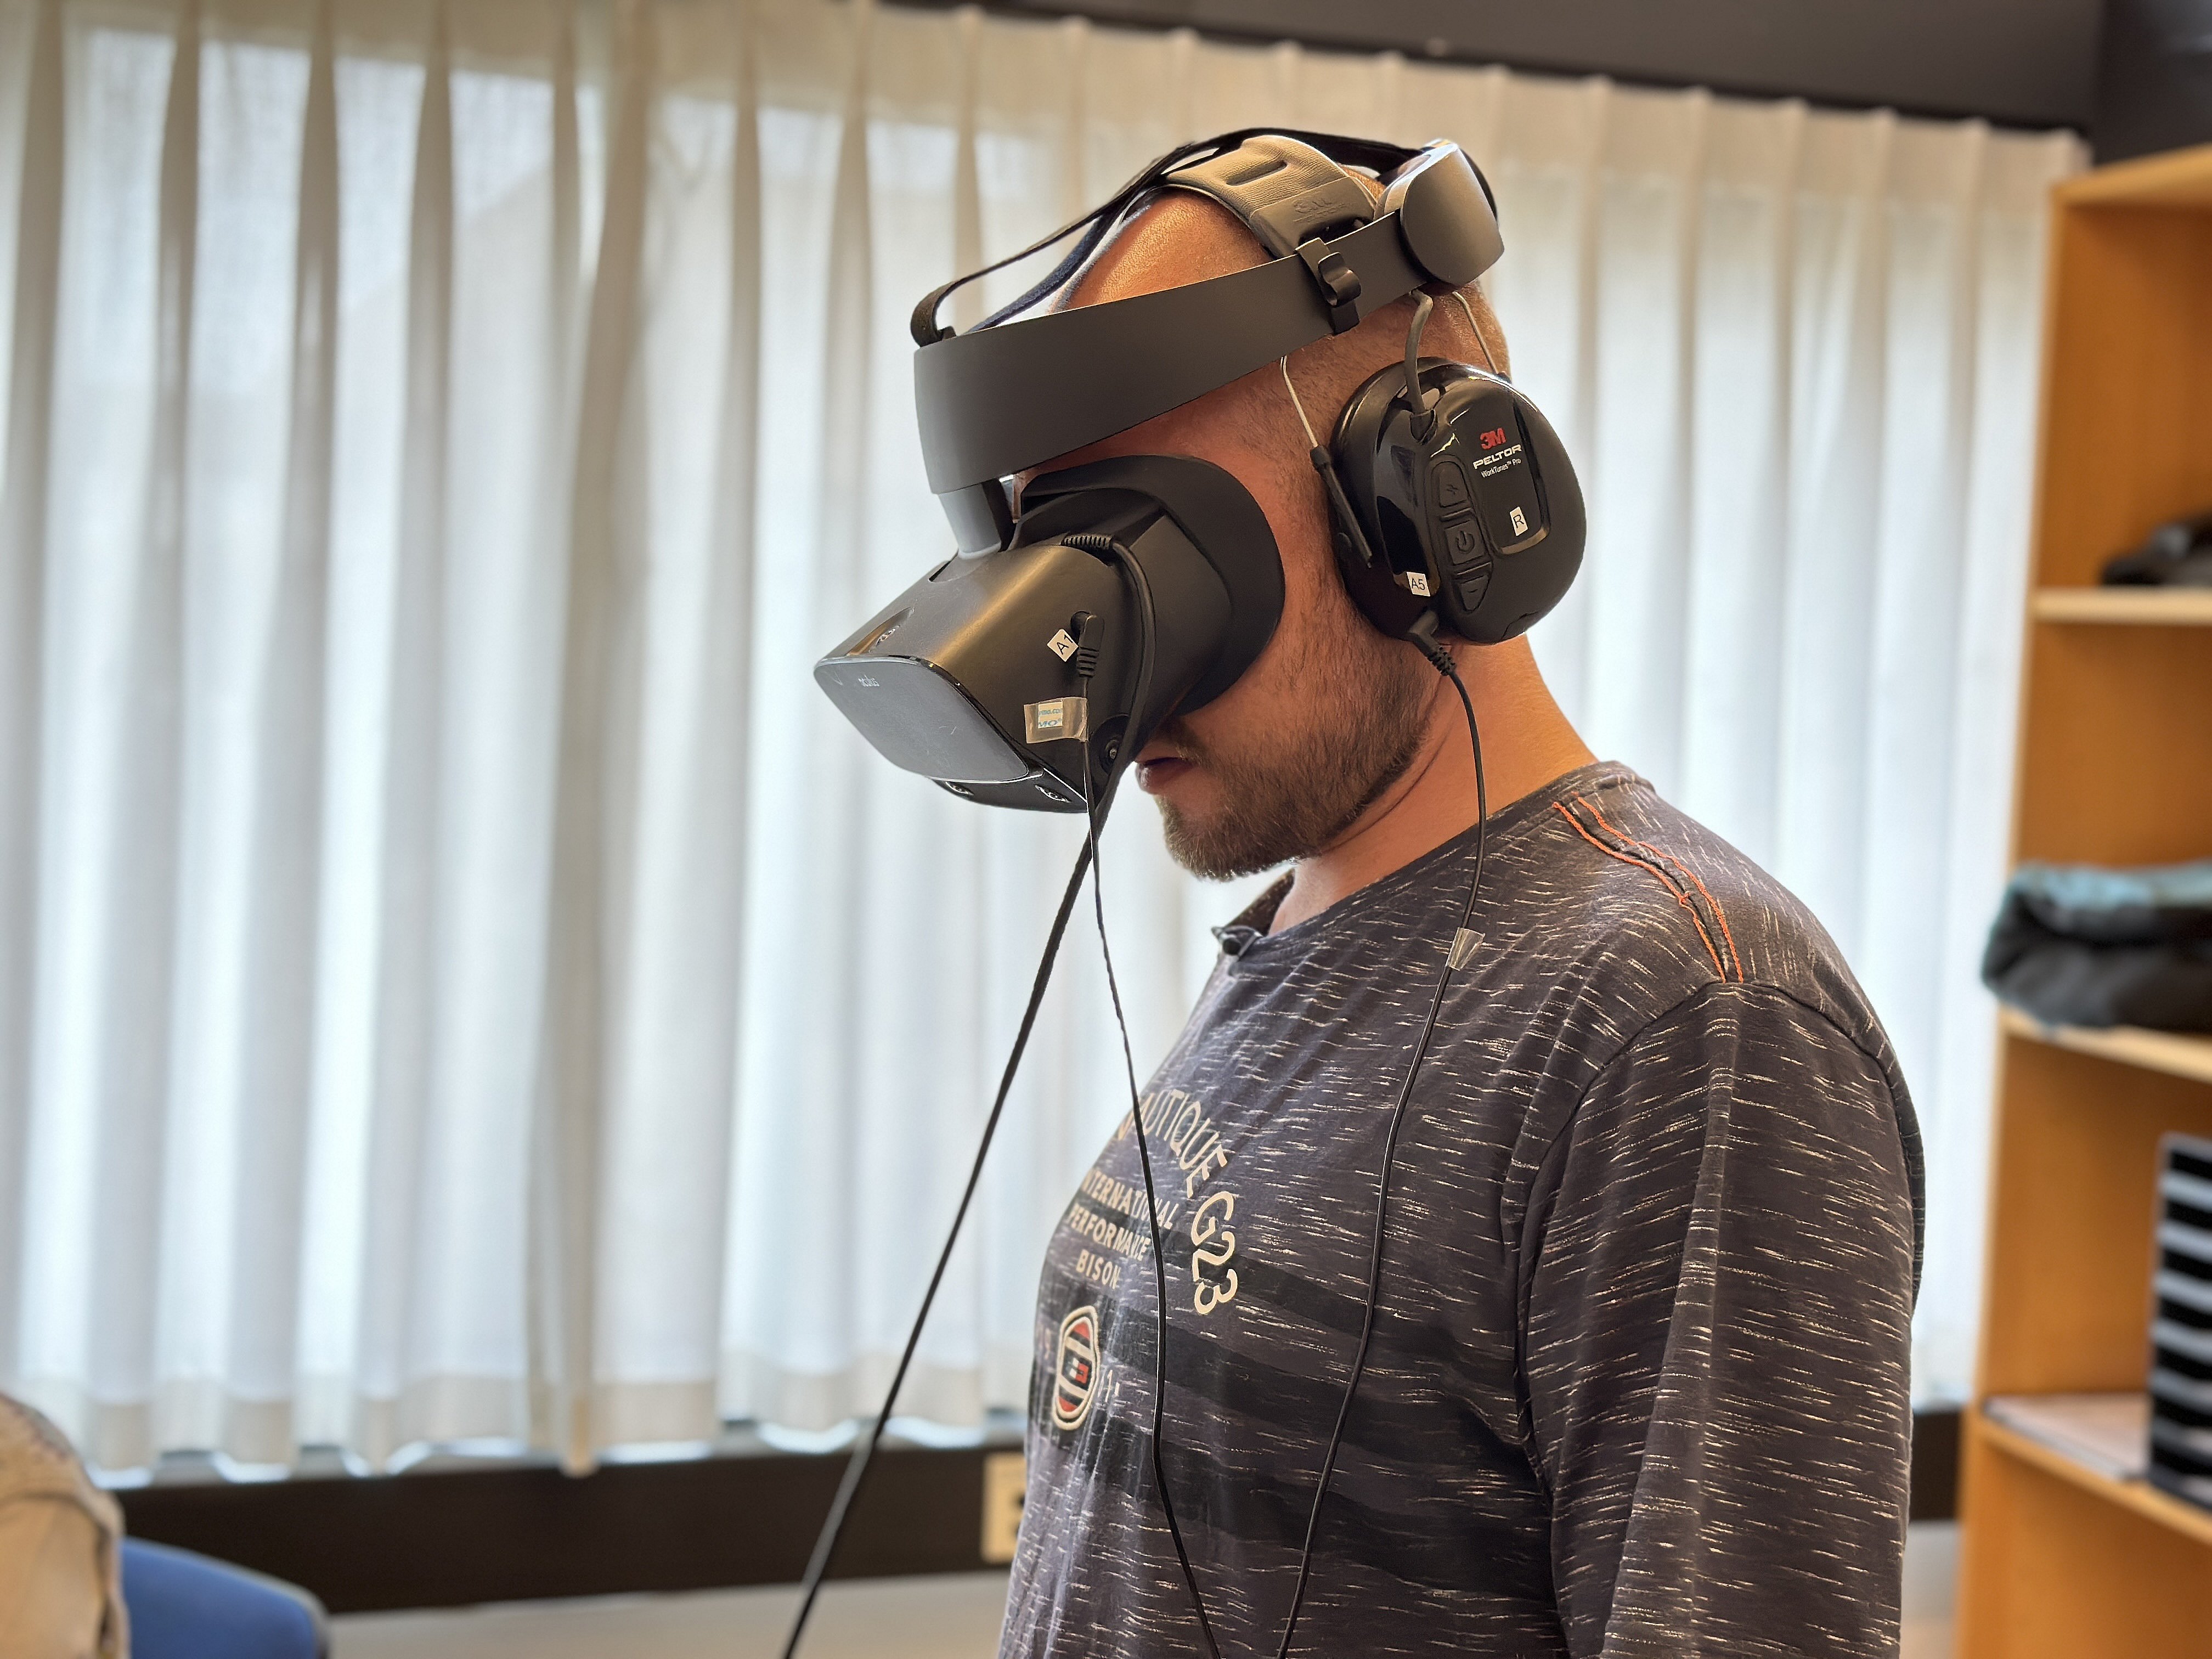 nedsænket Vuggeviser salut VR-briller hjælper Mathias med at se sine dæmoner i øjnene | TV2 Nord